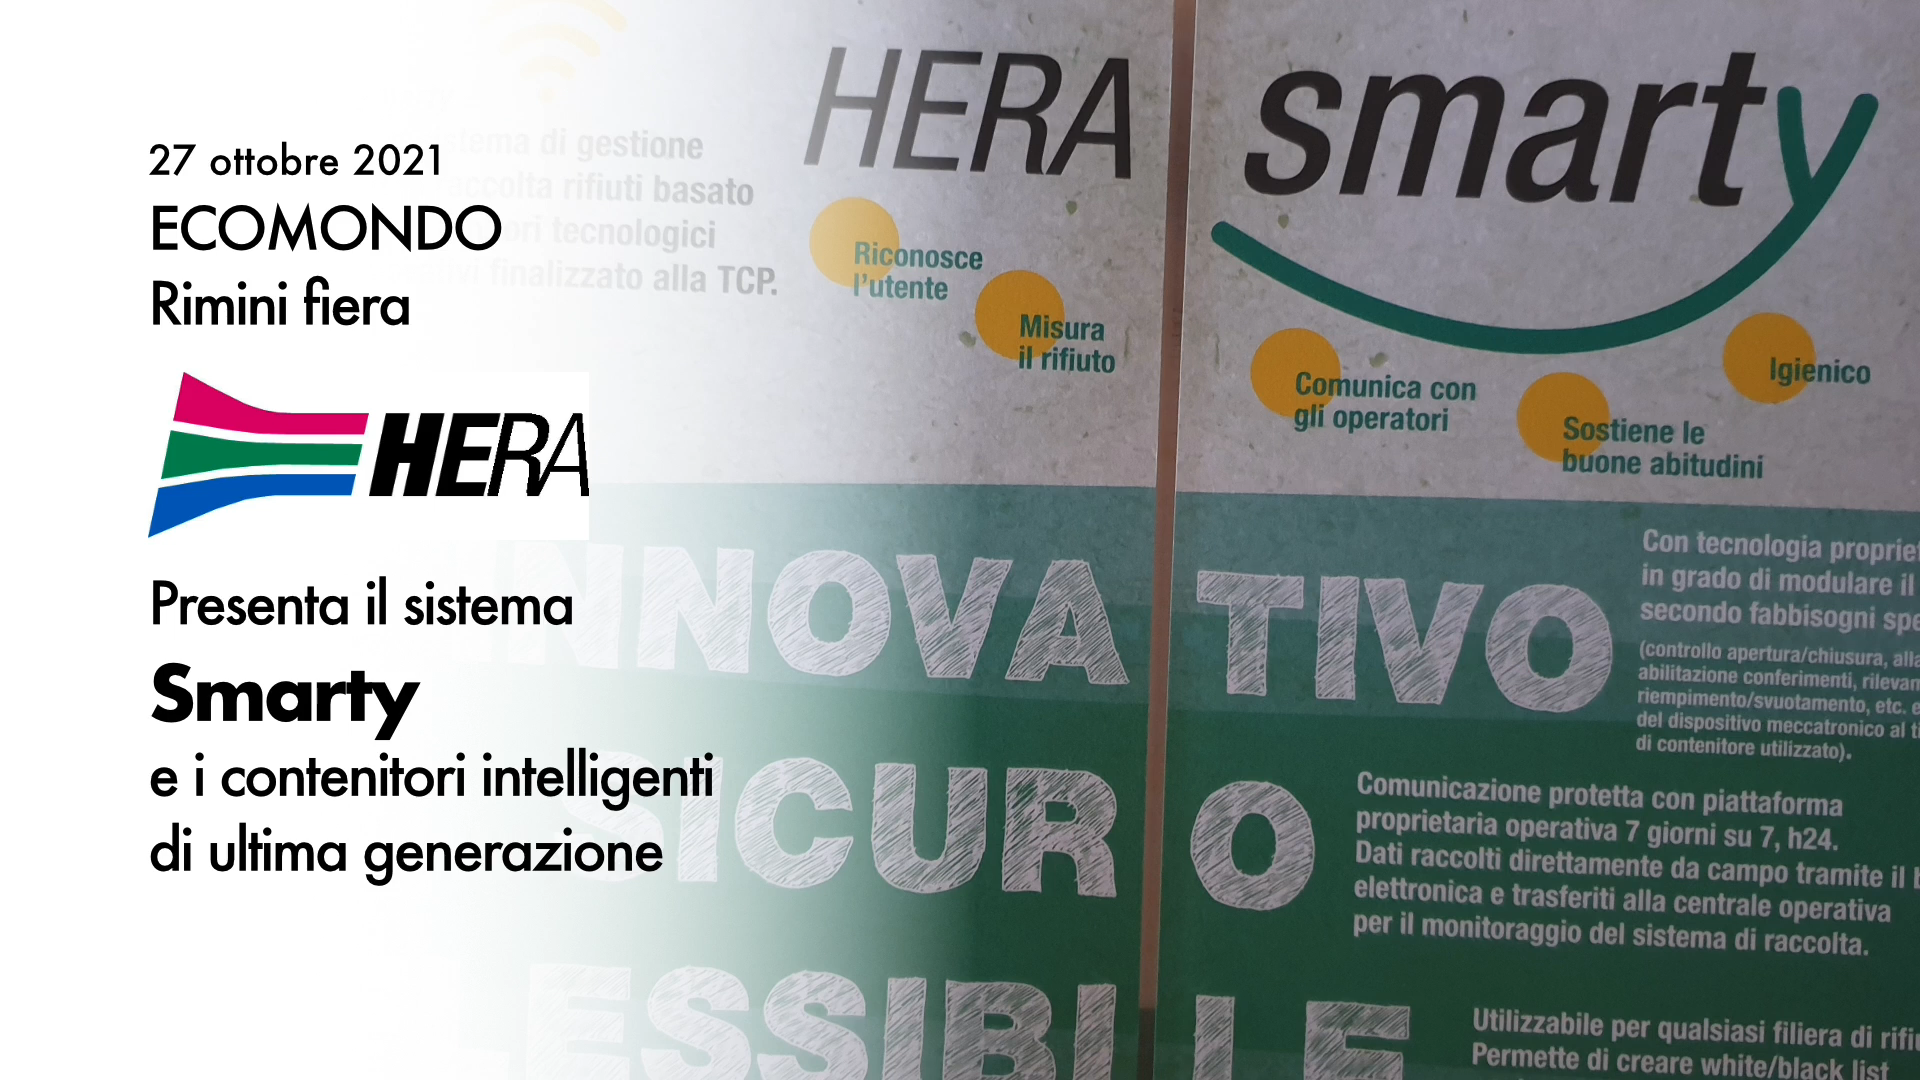 HERA presenta il sistema SMARTY a ECOMONDO Rimini Fiera